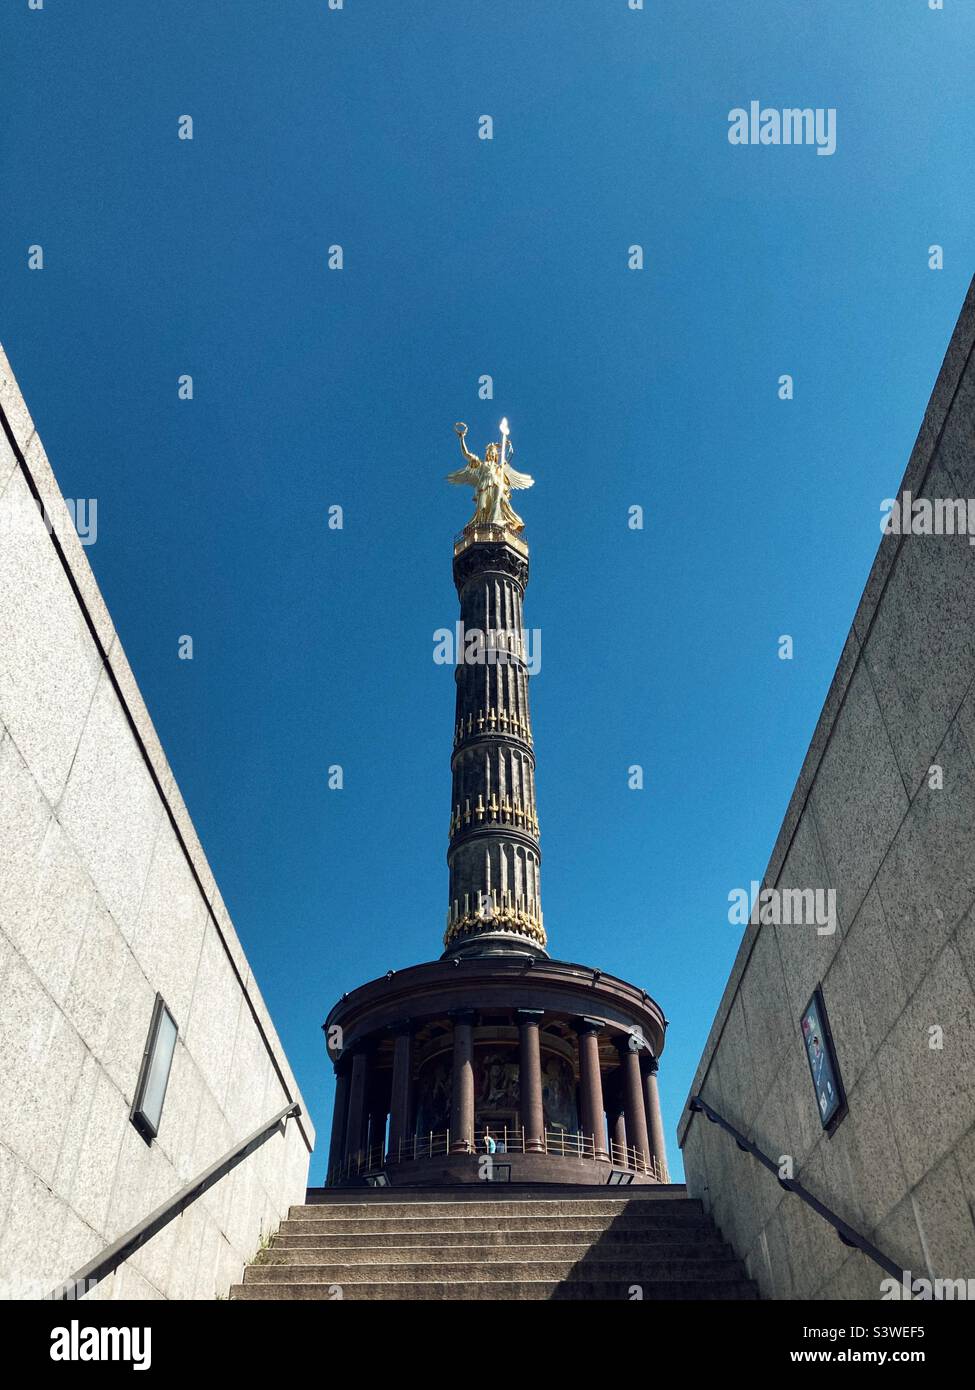 Siegessäule (colonne victoire), Berlin, Allemagne Banque D'Images